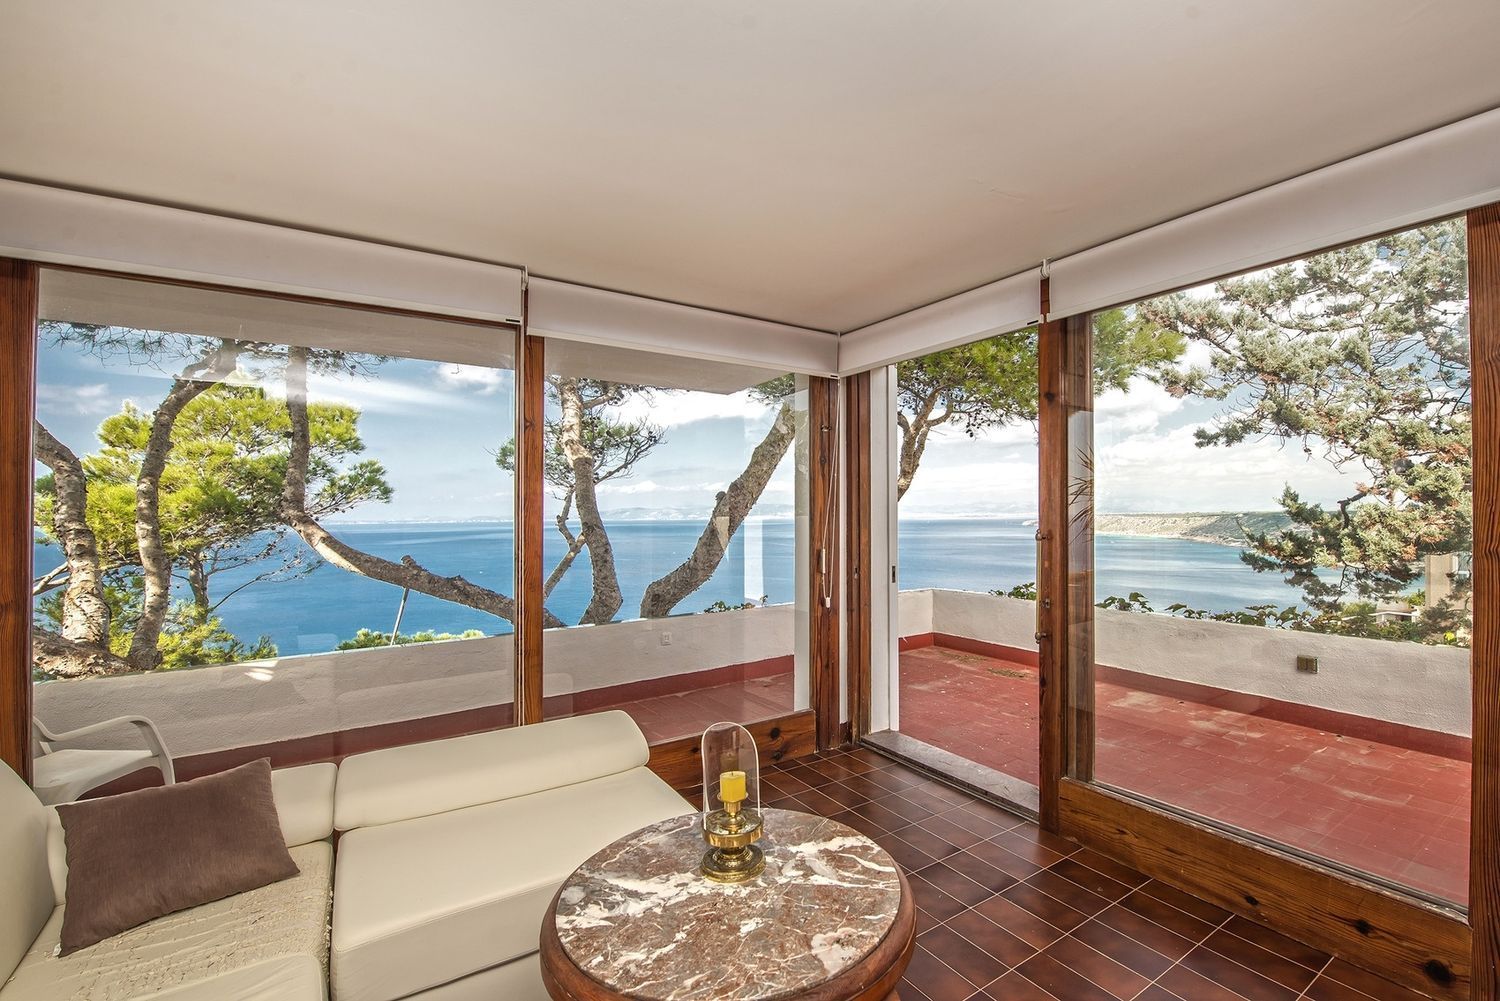 Casa en venta en primera línea de mar en Badia Gran, en Mallorca